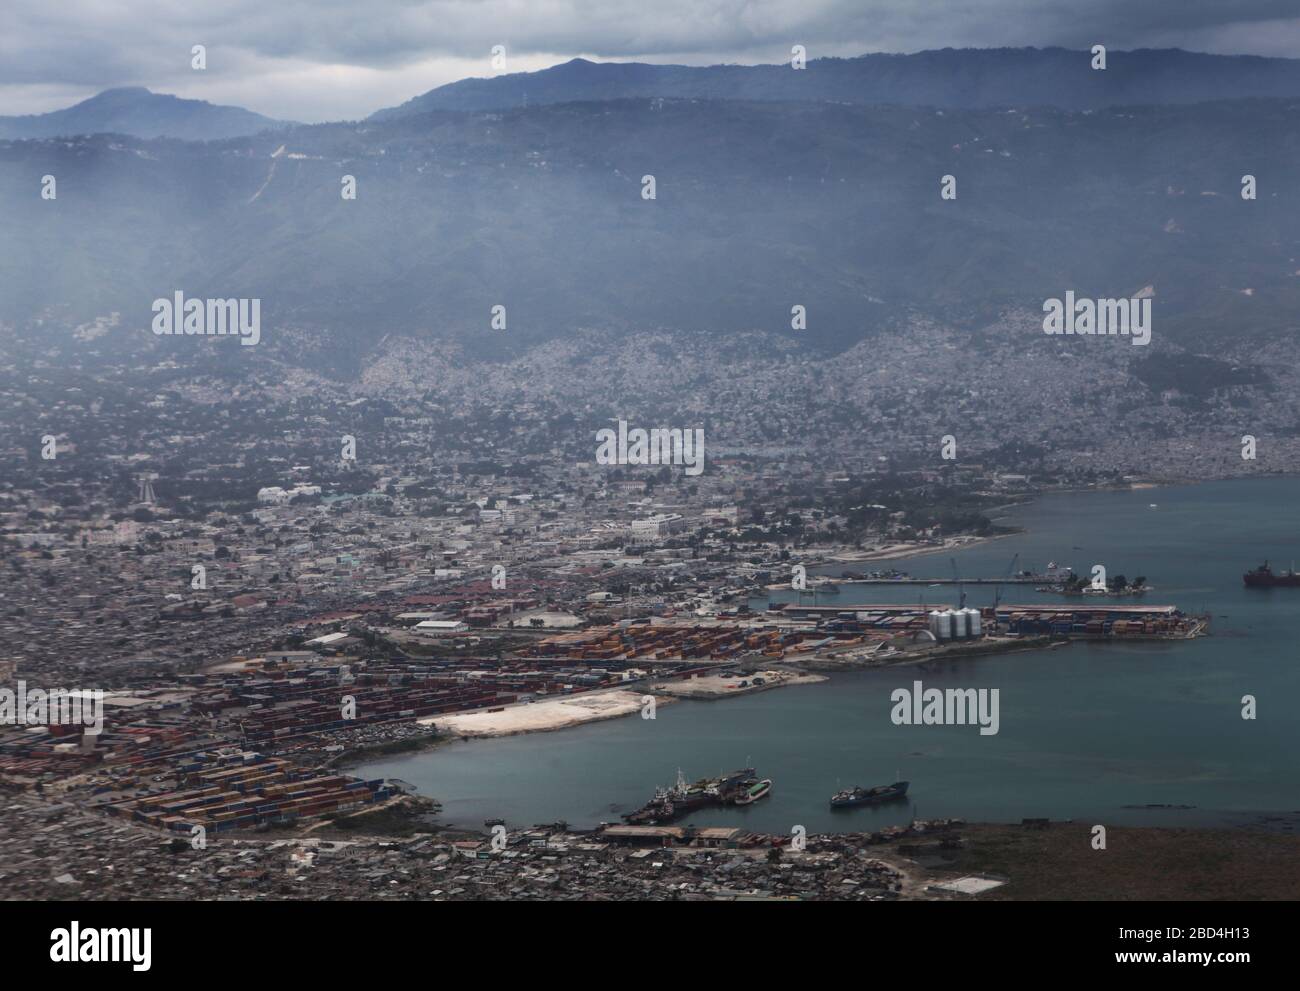 Februar 2010 - Port-au-Prince, Haiti, mit Blick nach Südosten mit dem Hafen im Vordergrund. Viele der Viertel mit den schwersten Zerstörungen durch das Erdbeben der Stärke 7, das Haiti am 12. Januar 2010 heimsuchte, sind in diese Ansicht einbezogen. Stockfoto